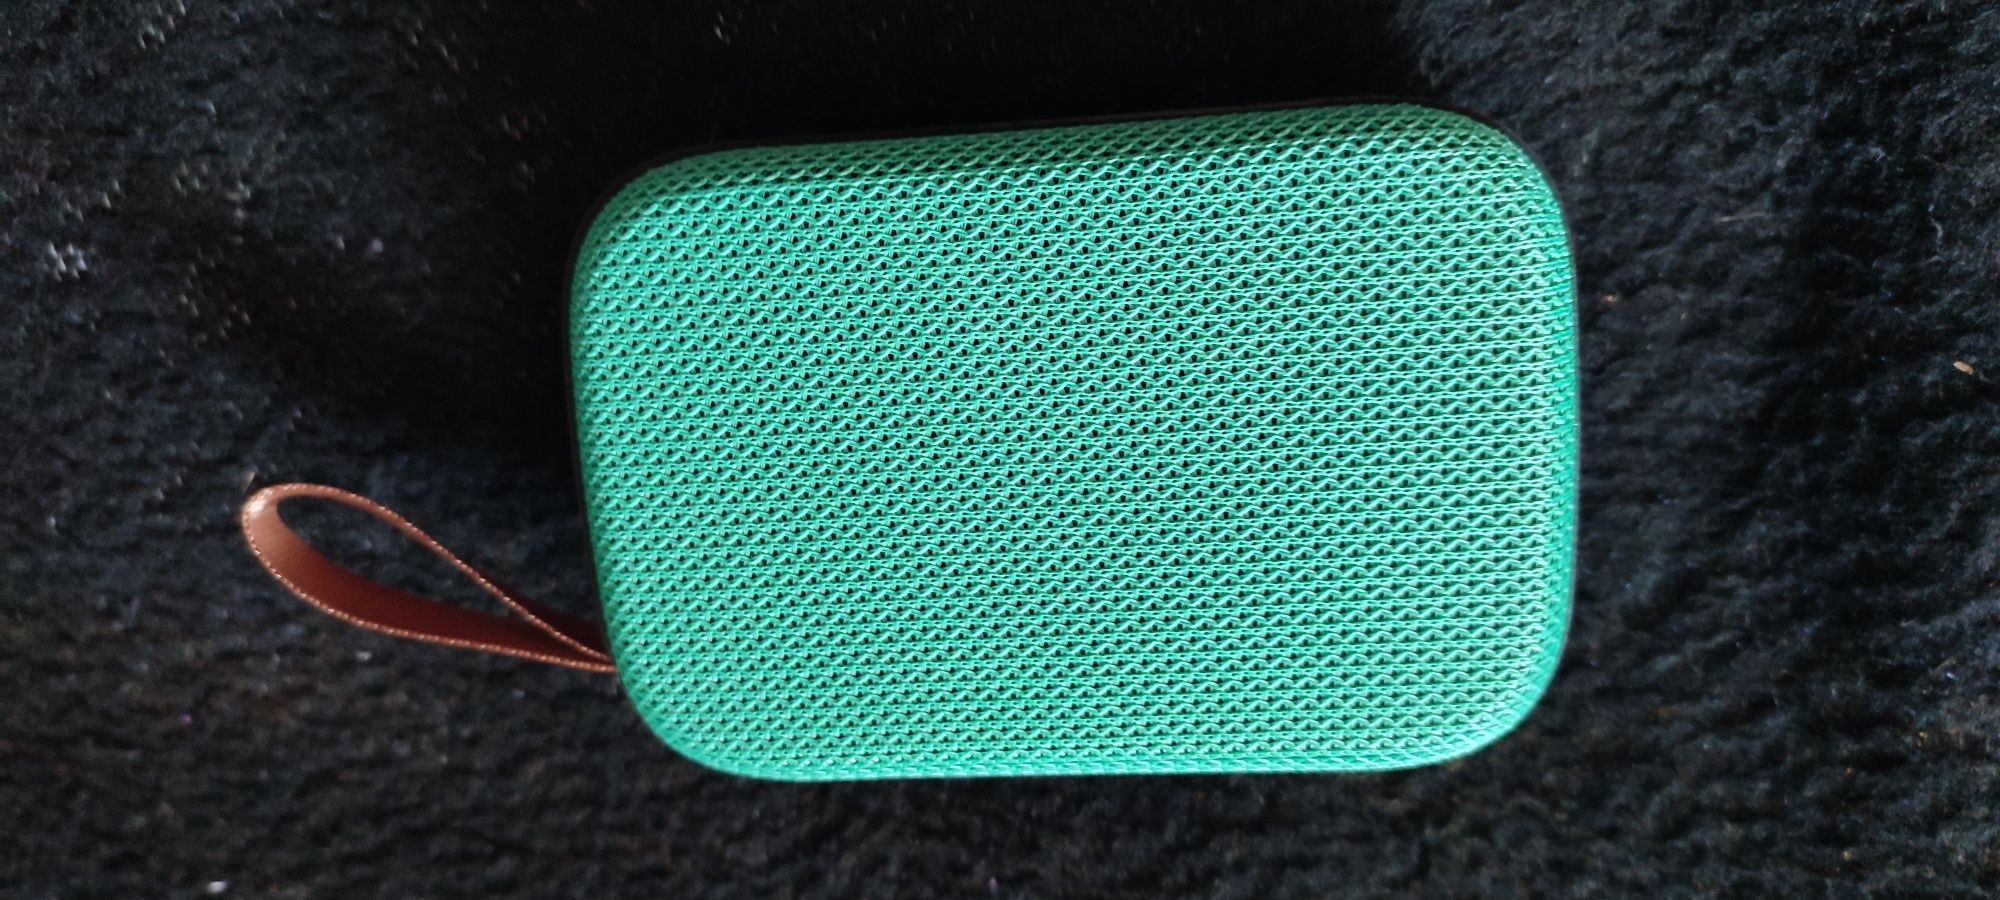 Głośnik przenośny Bluetooth SD i USB seledynowy, turkusowy, zielony